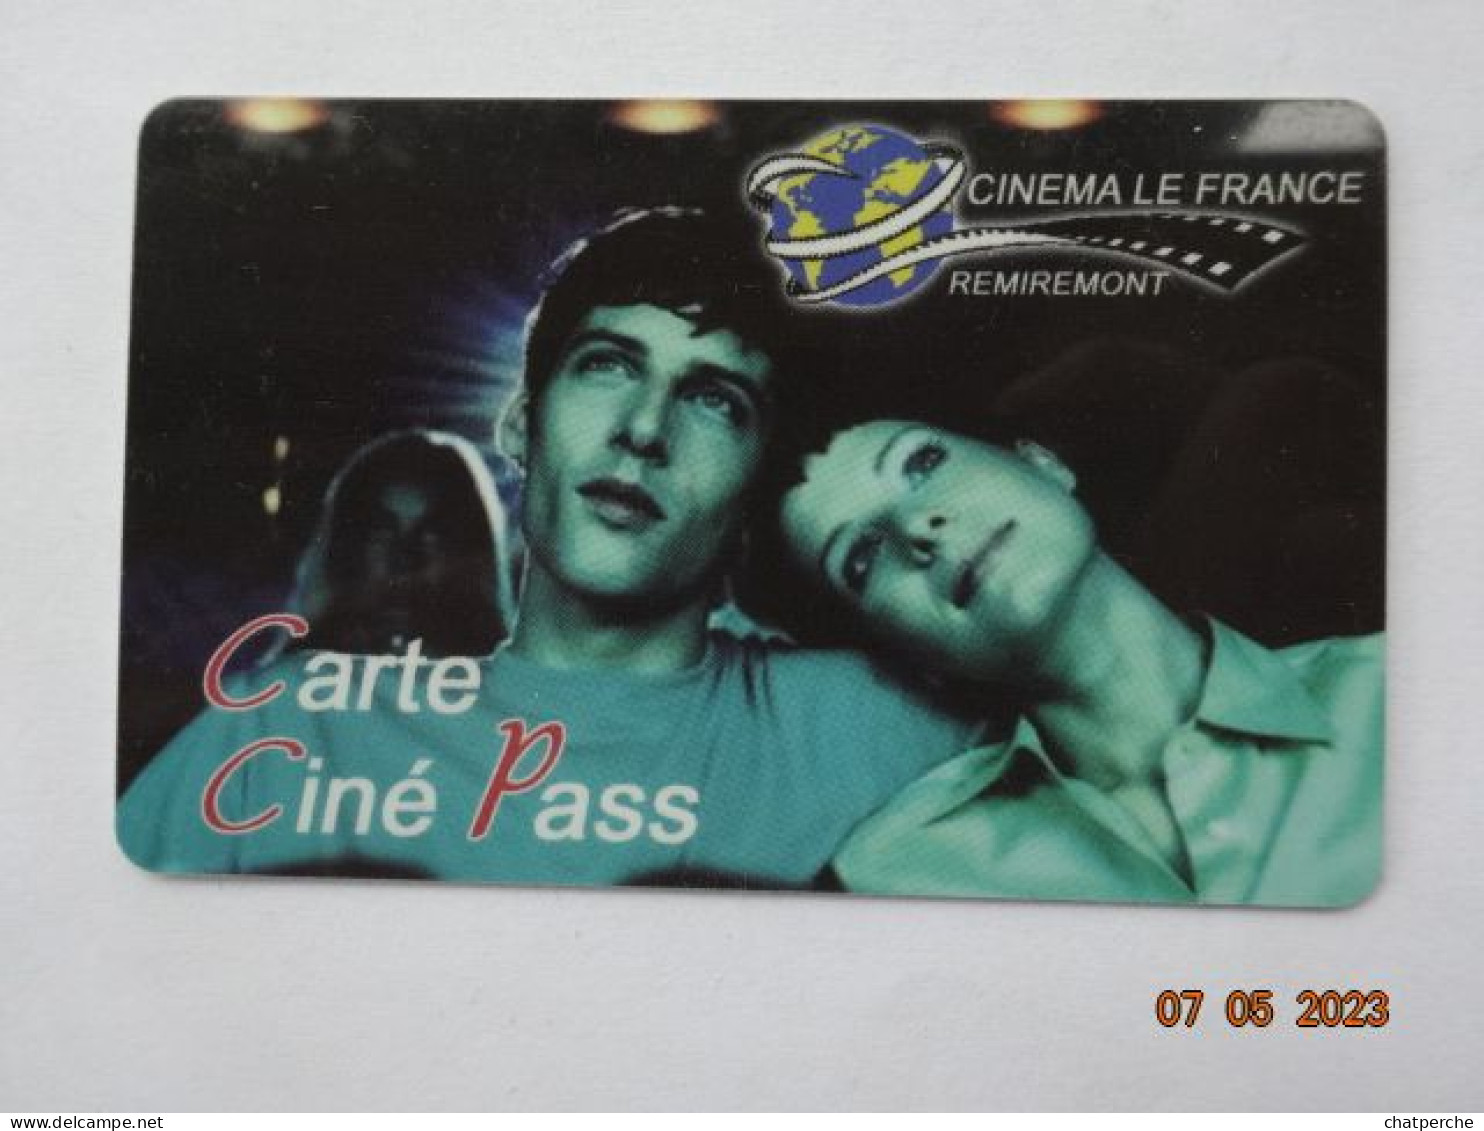 CINECARTE CARTE CINEMA CINE CARD BANDE MAGNETIQUE  CINEMA LE FRANCE REMIREMONT 88 VOSGES  CINE PASS - Cinécartes